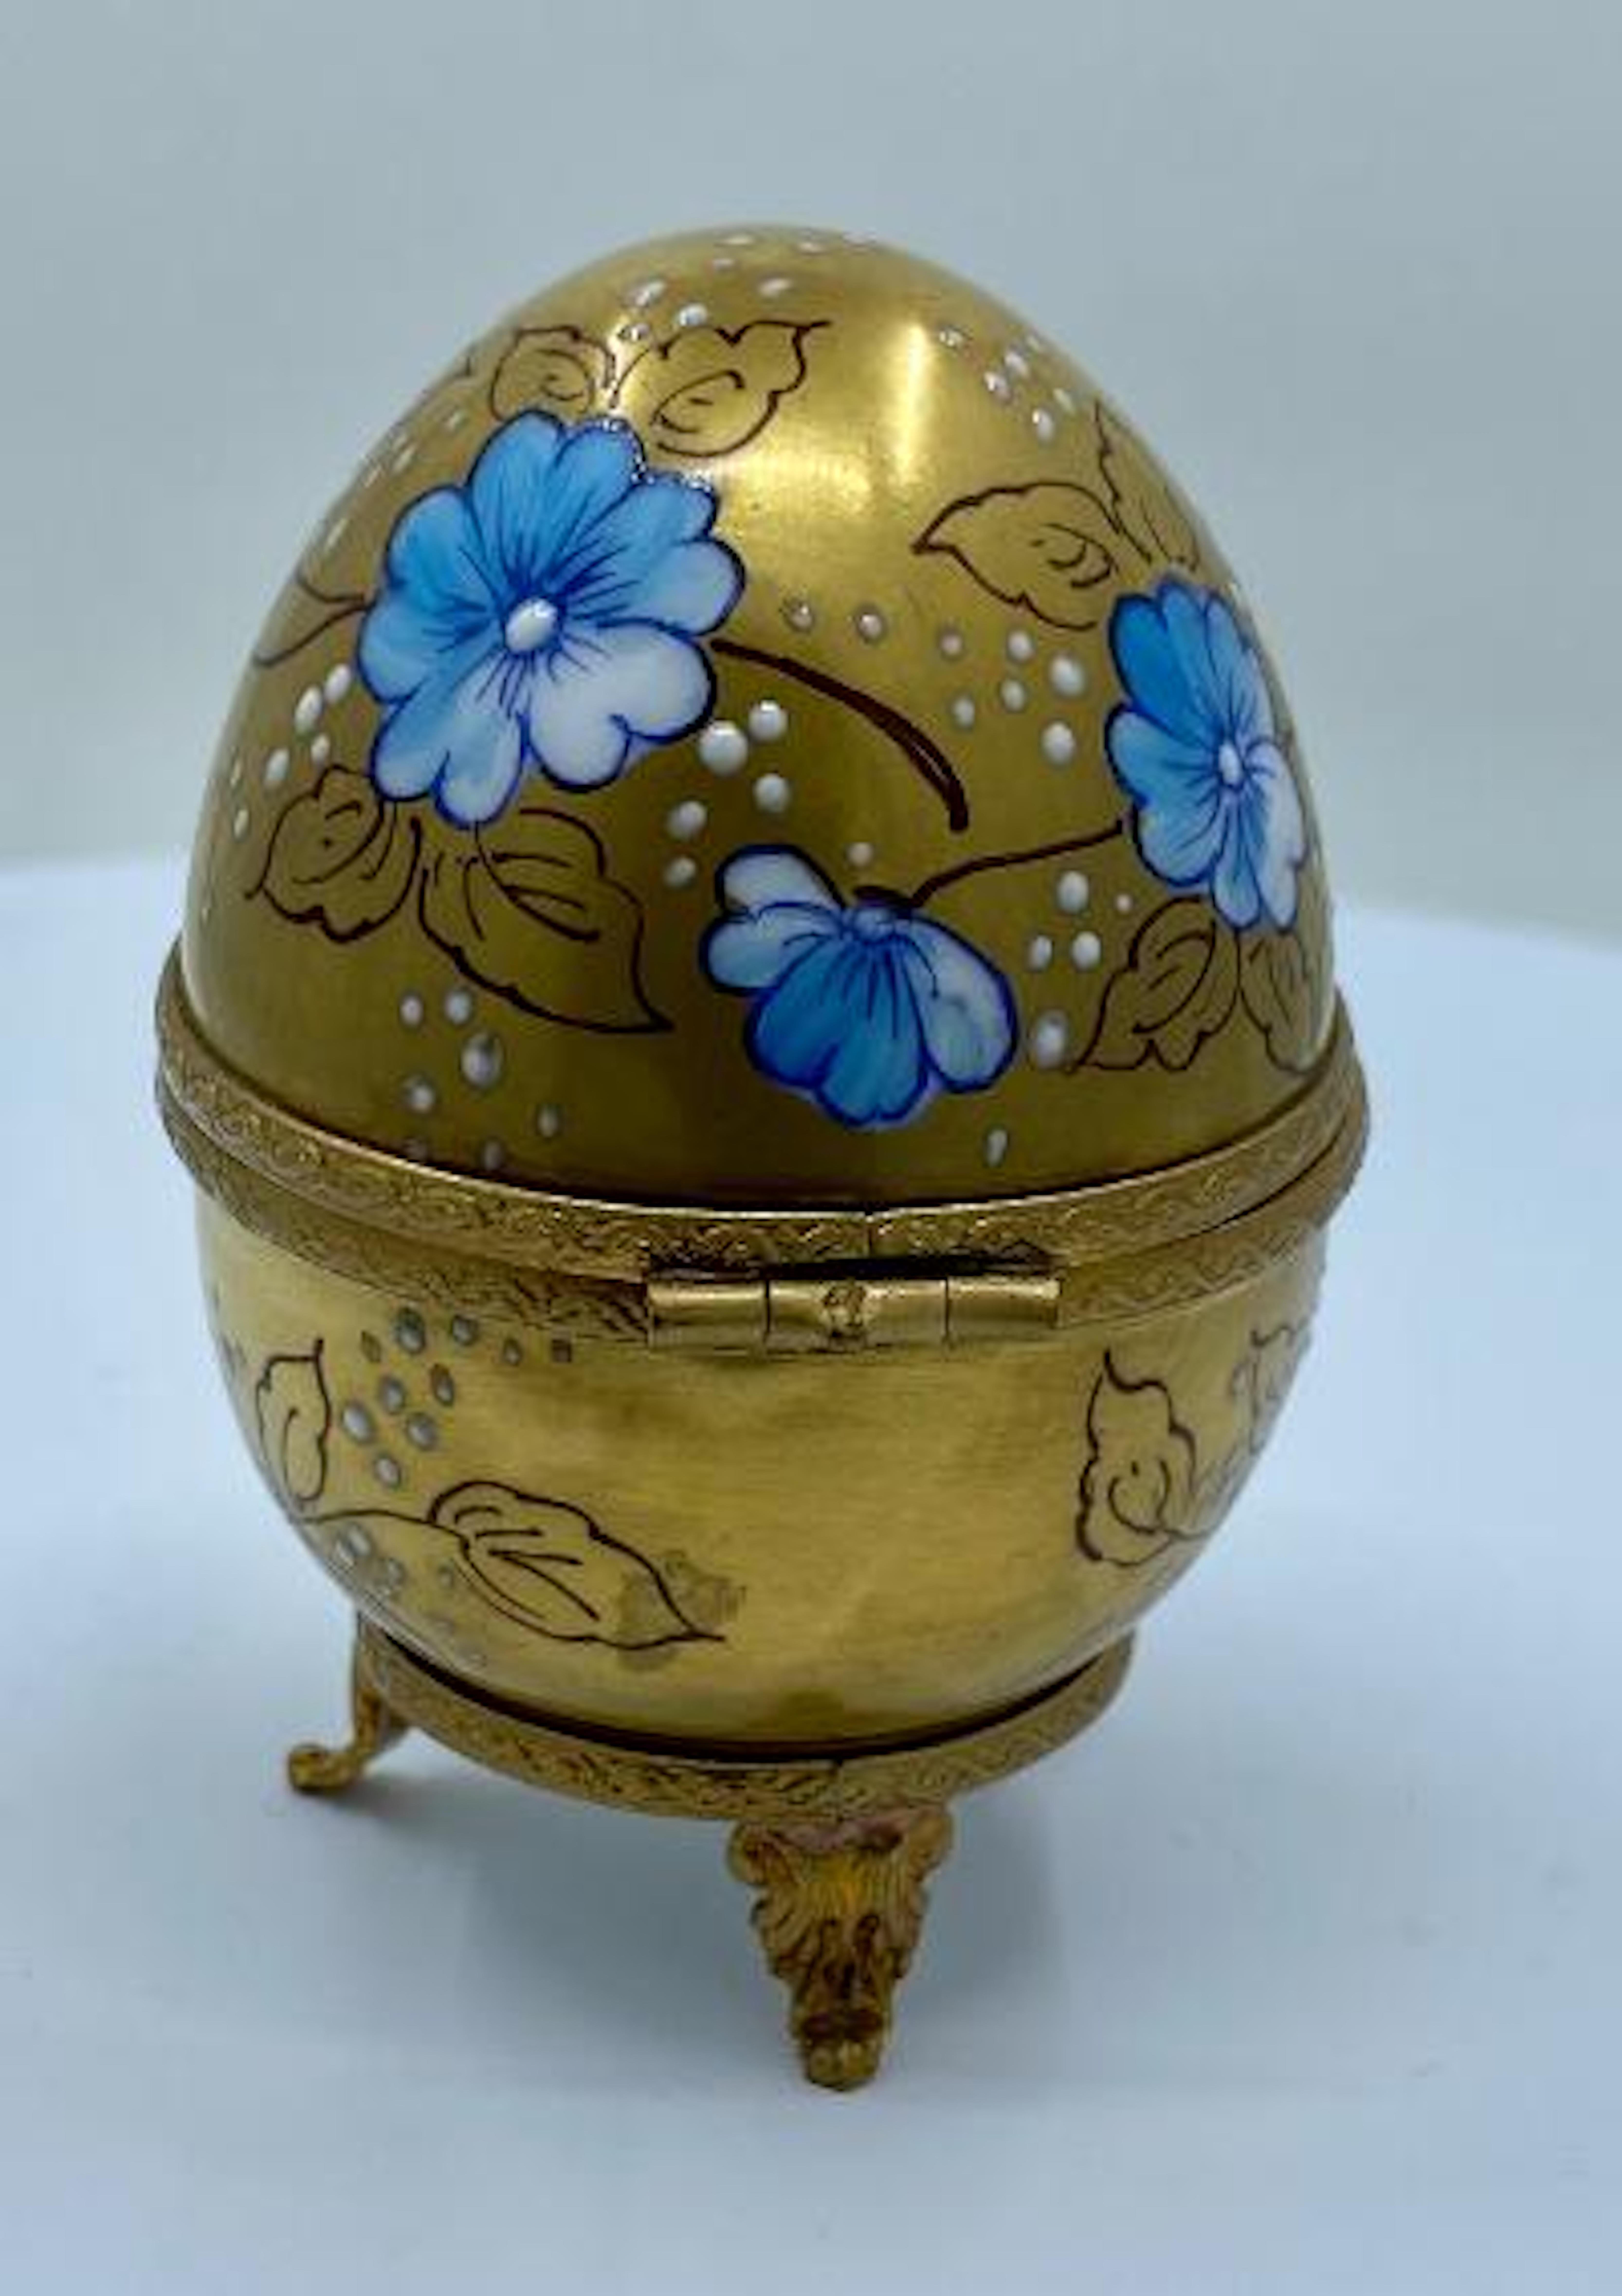 Hand-Crafted Exquisite Limoges France 24-Karat Gold Porcelain Egg with Perfume Bottle Inside